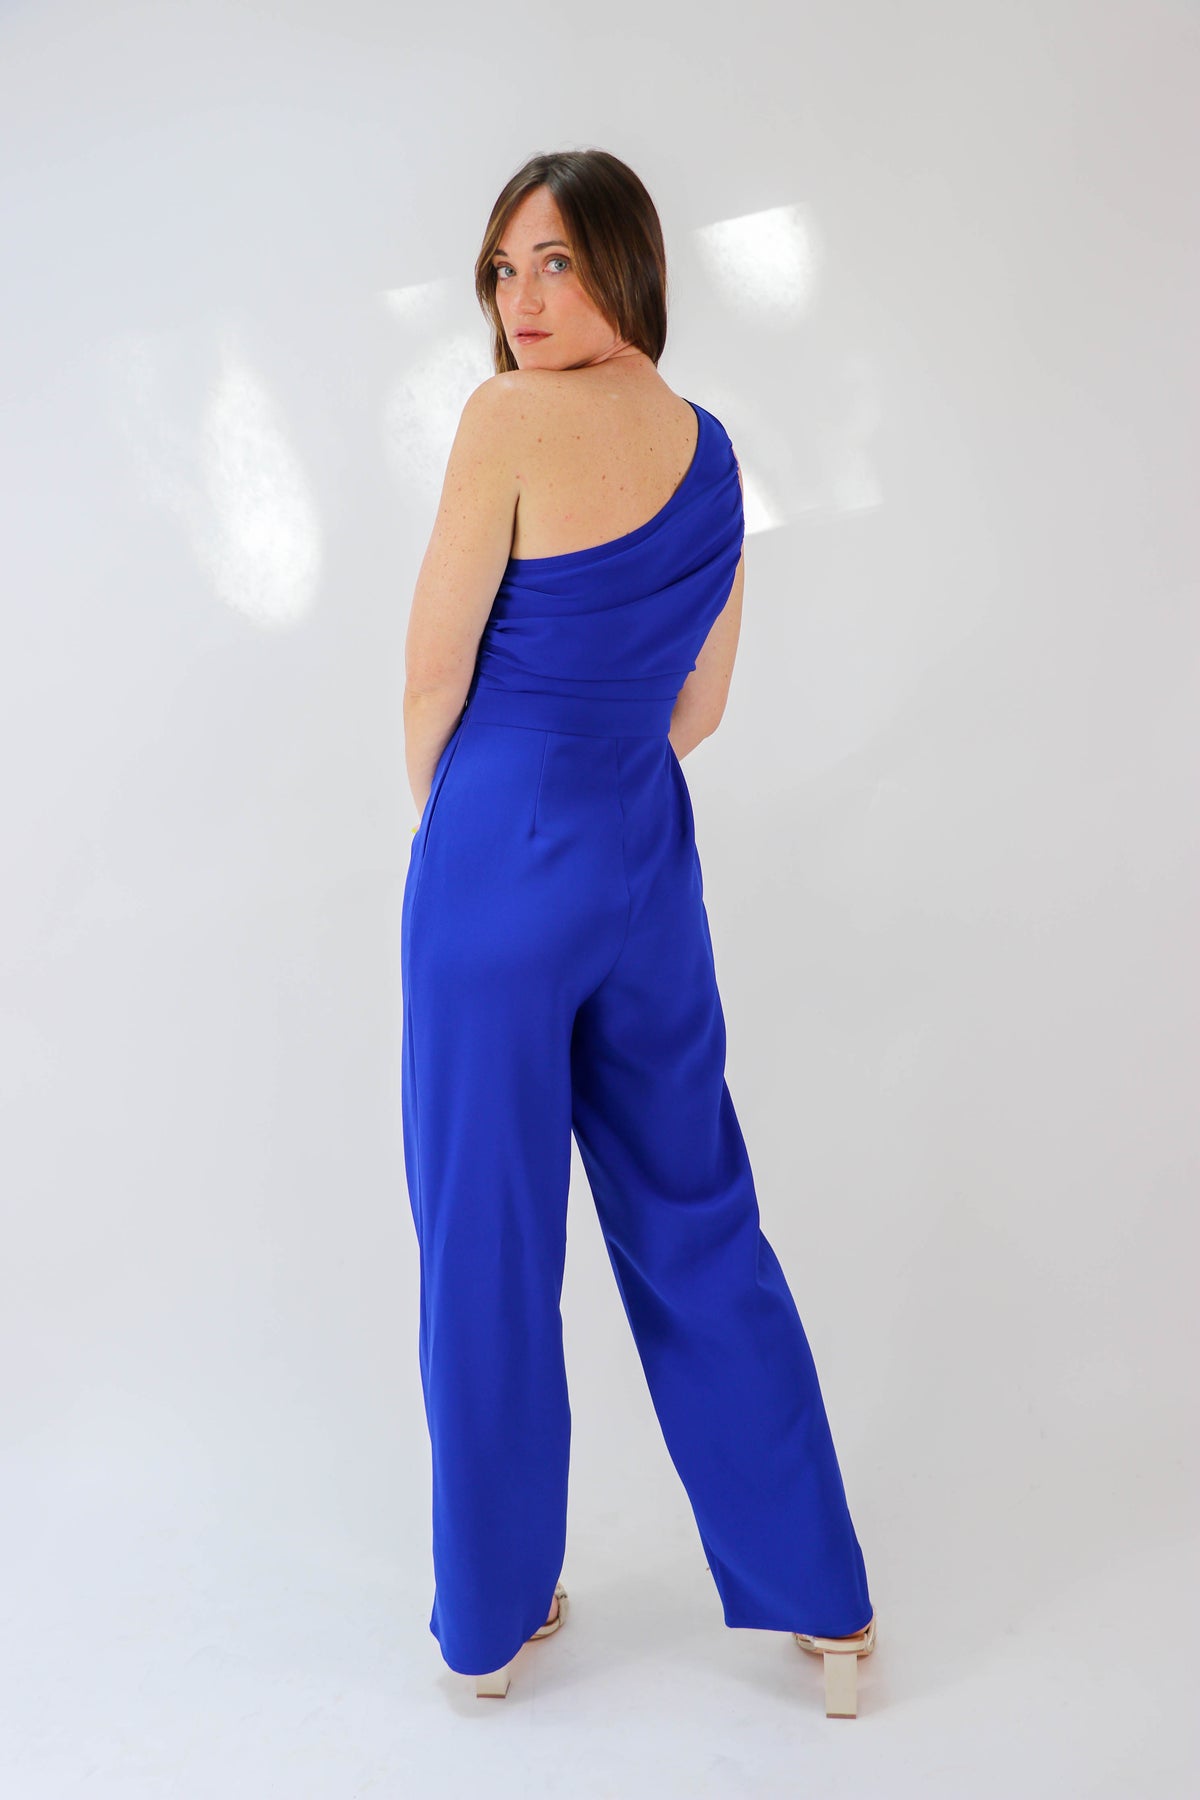 Cobalt Blue One Shoulder Jumpsuit | Sweetest Stitch Online Boutique